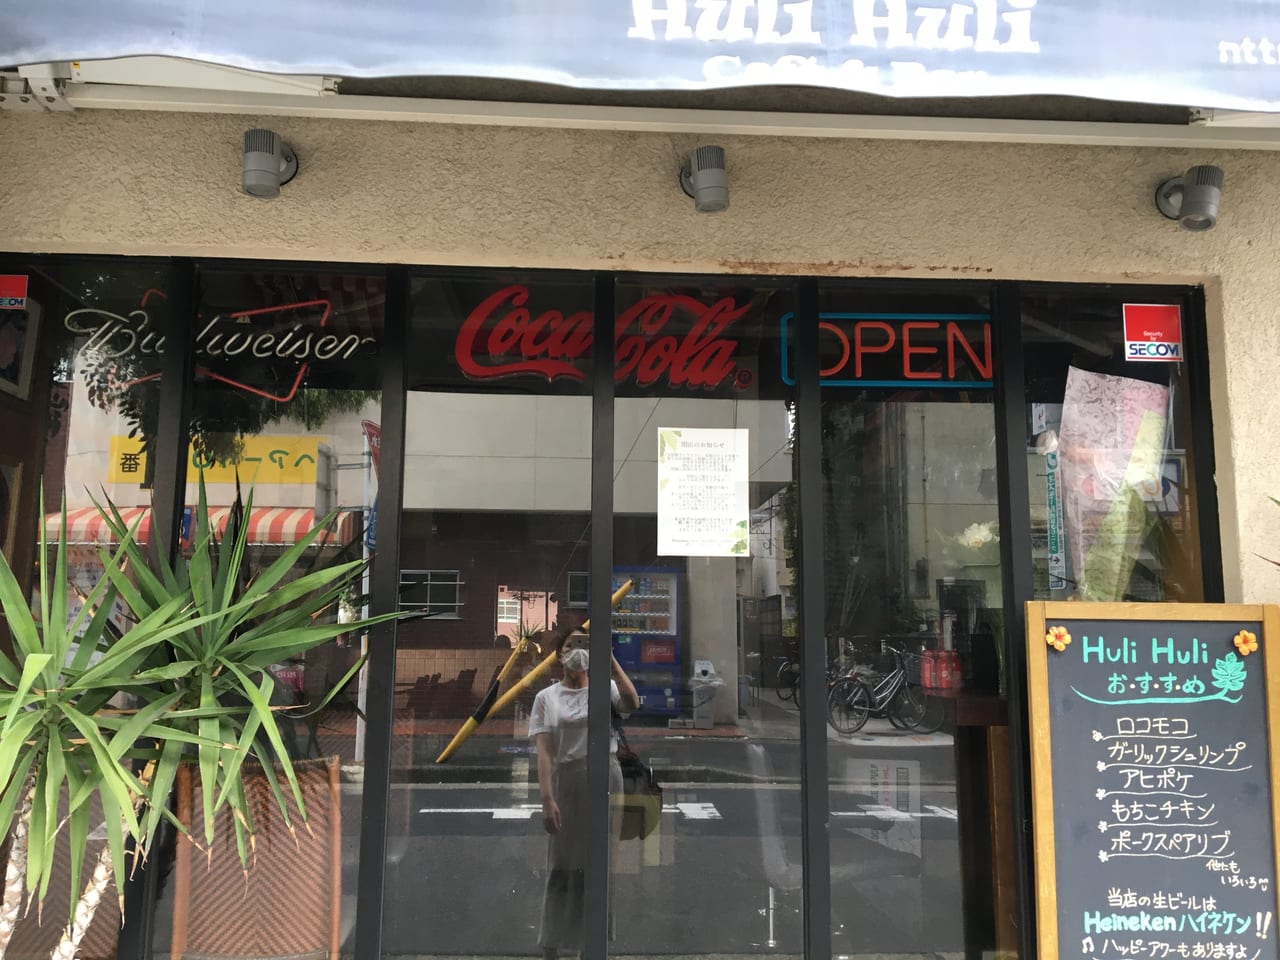 Hawaiian Diner Huli Huli Cafe ＆ Bar